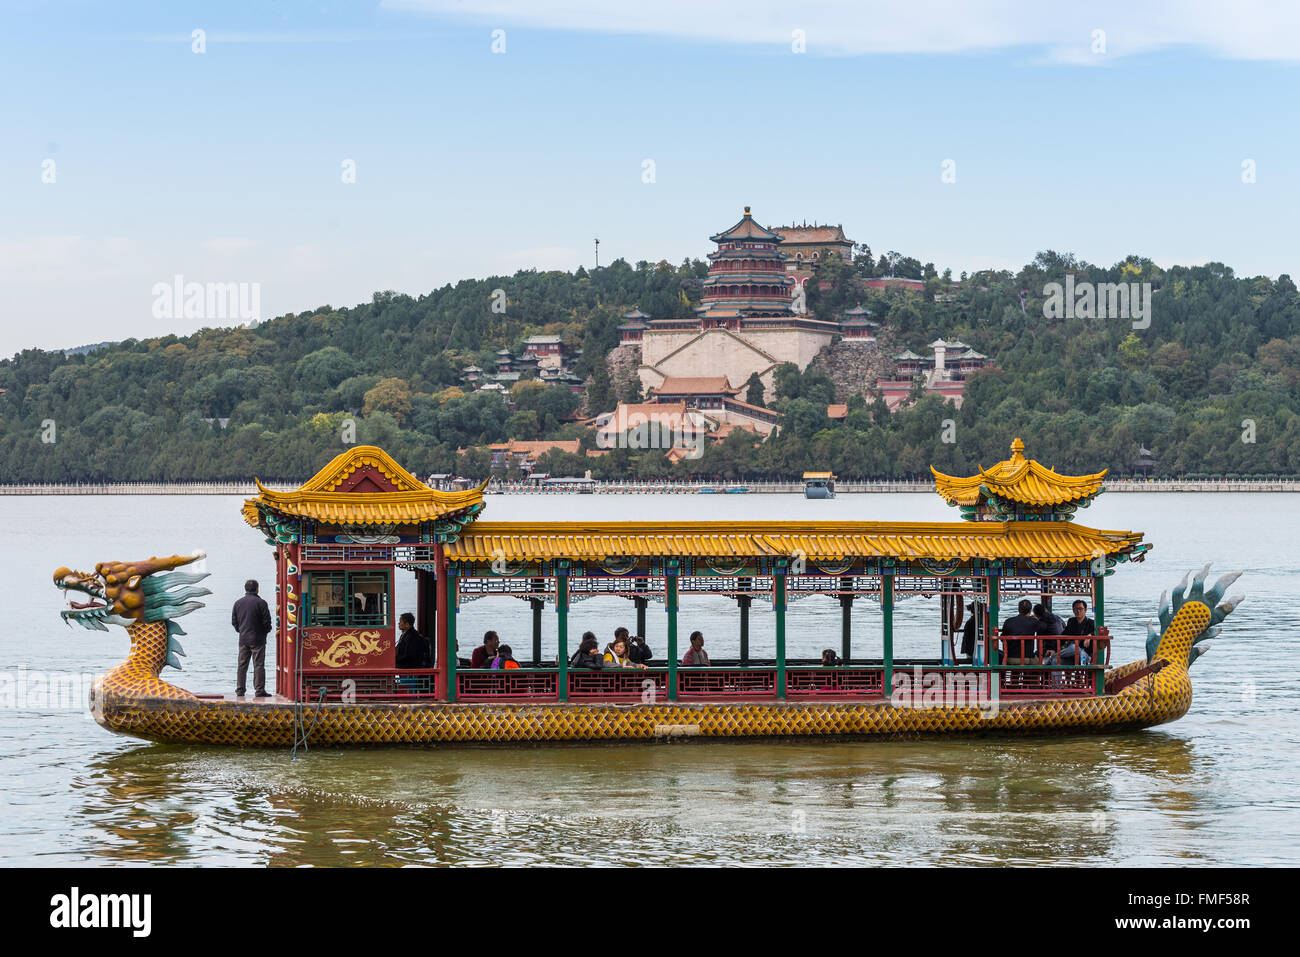 Les touristes sur un bateau dragon flottant sur le lac Kunming, Beijing, Chine. Banque D'Images